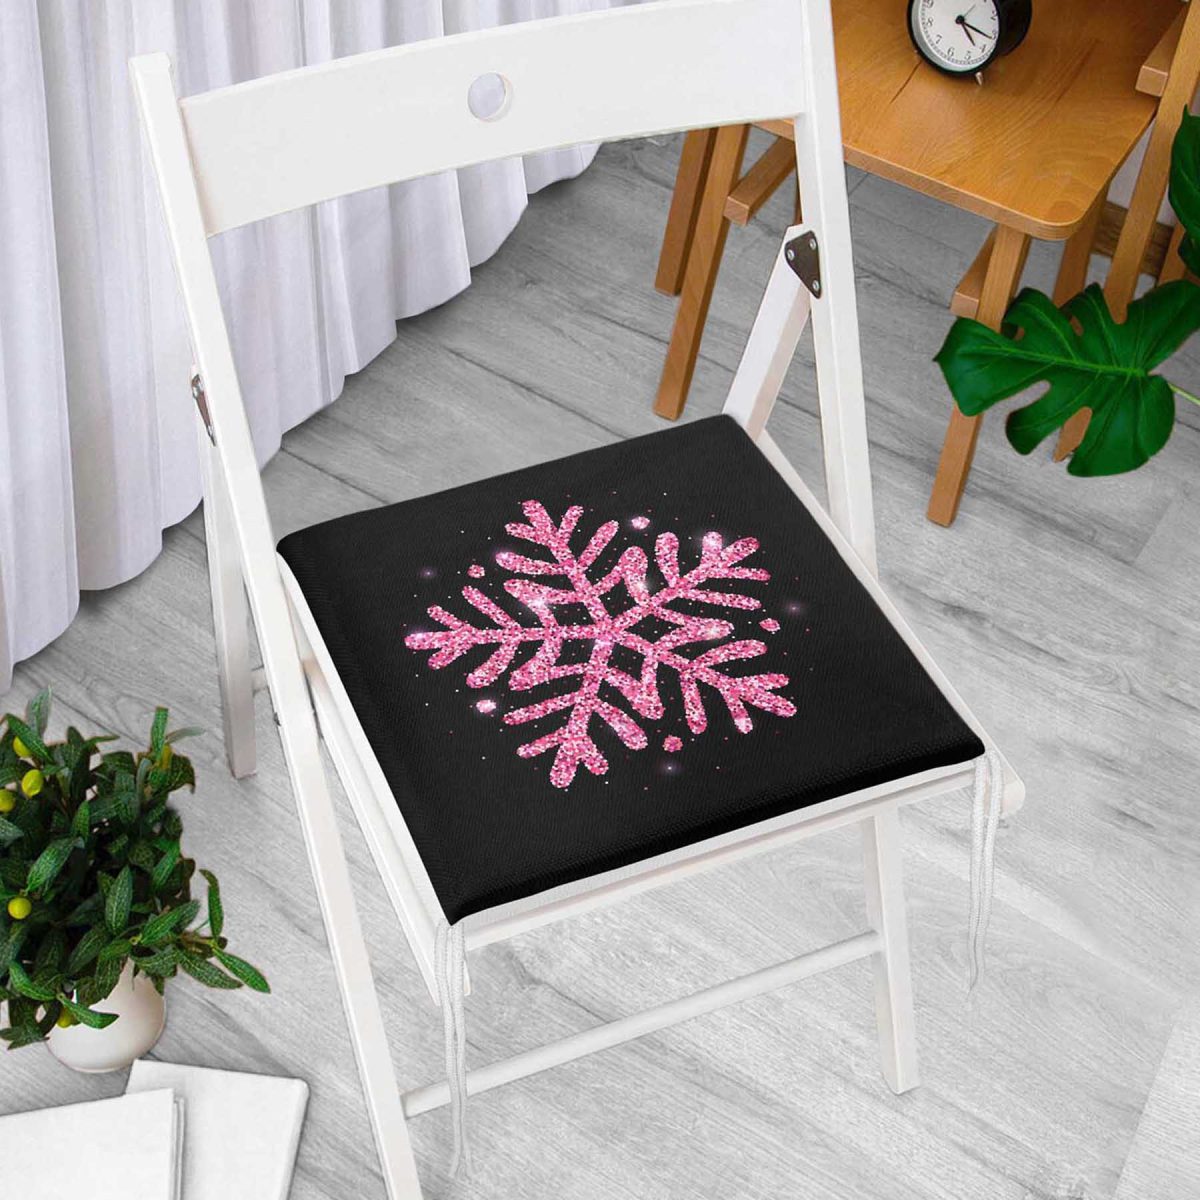 Siyah Zeminli Pembe Renkli Kar tanesi Desenli Dijital Baskılı Modern Fermuarlı Sandalye Minderi Realhomes